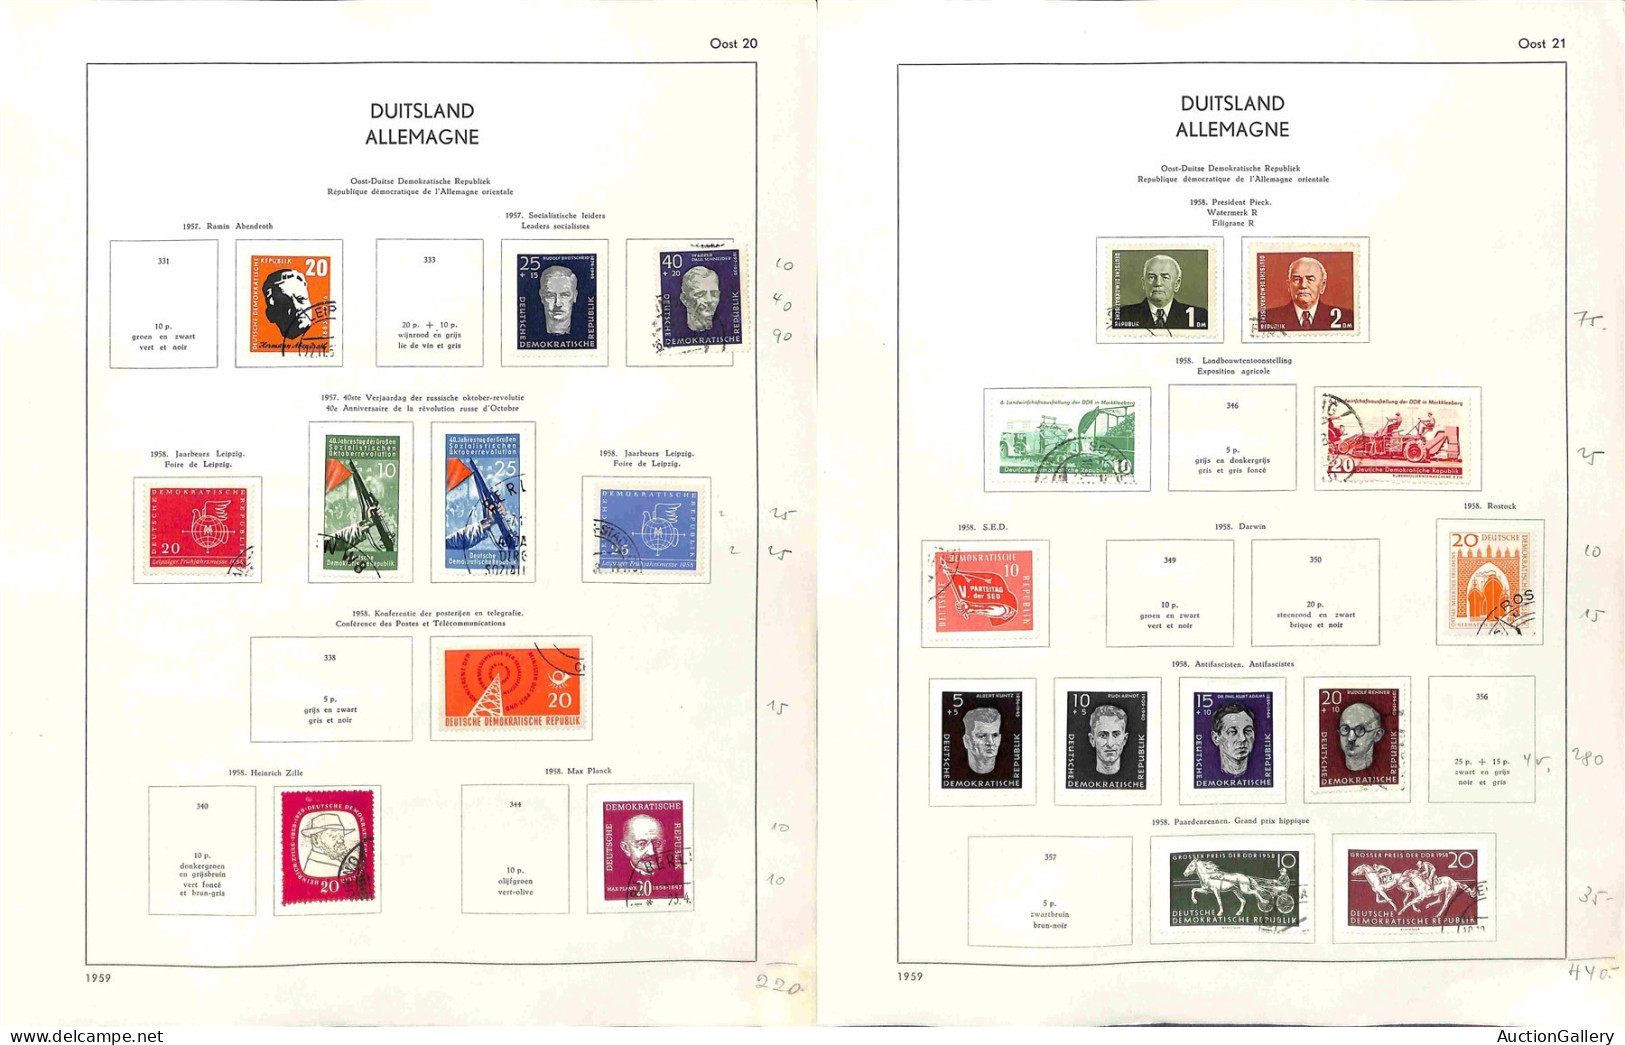 Lotti&Collezioni - GERMANIA - Zona Sovietica + DDR - 1945/1963 - Collezione di valori e serie complete del periodo monta